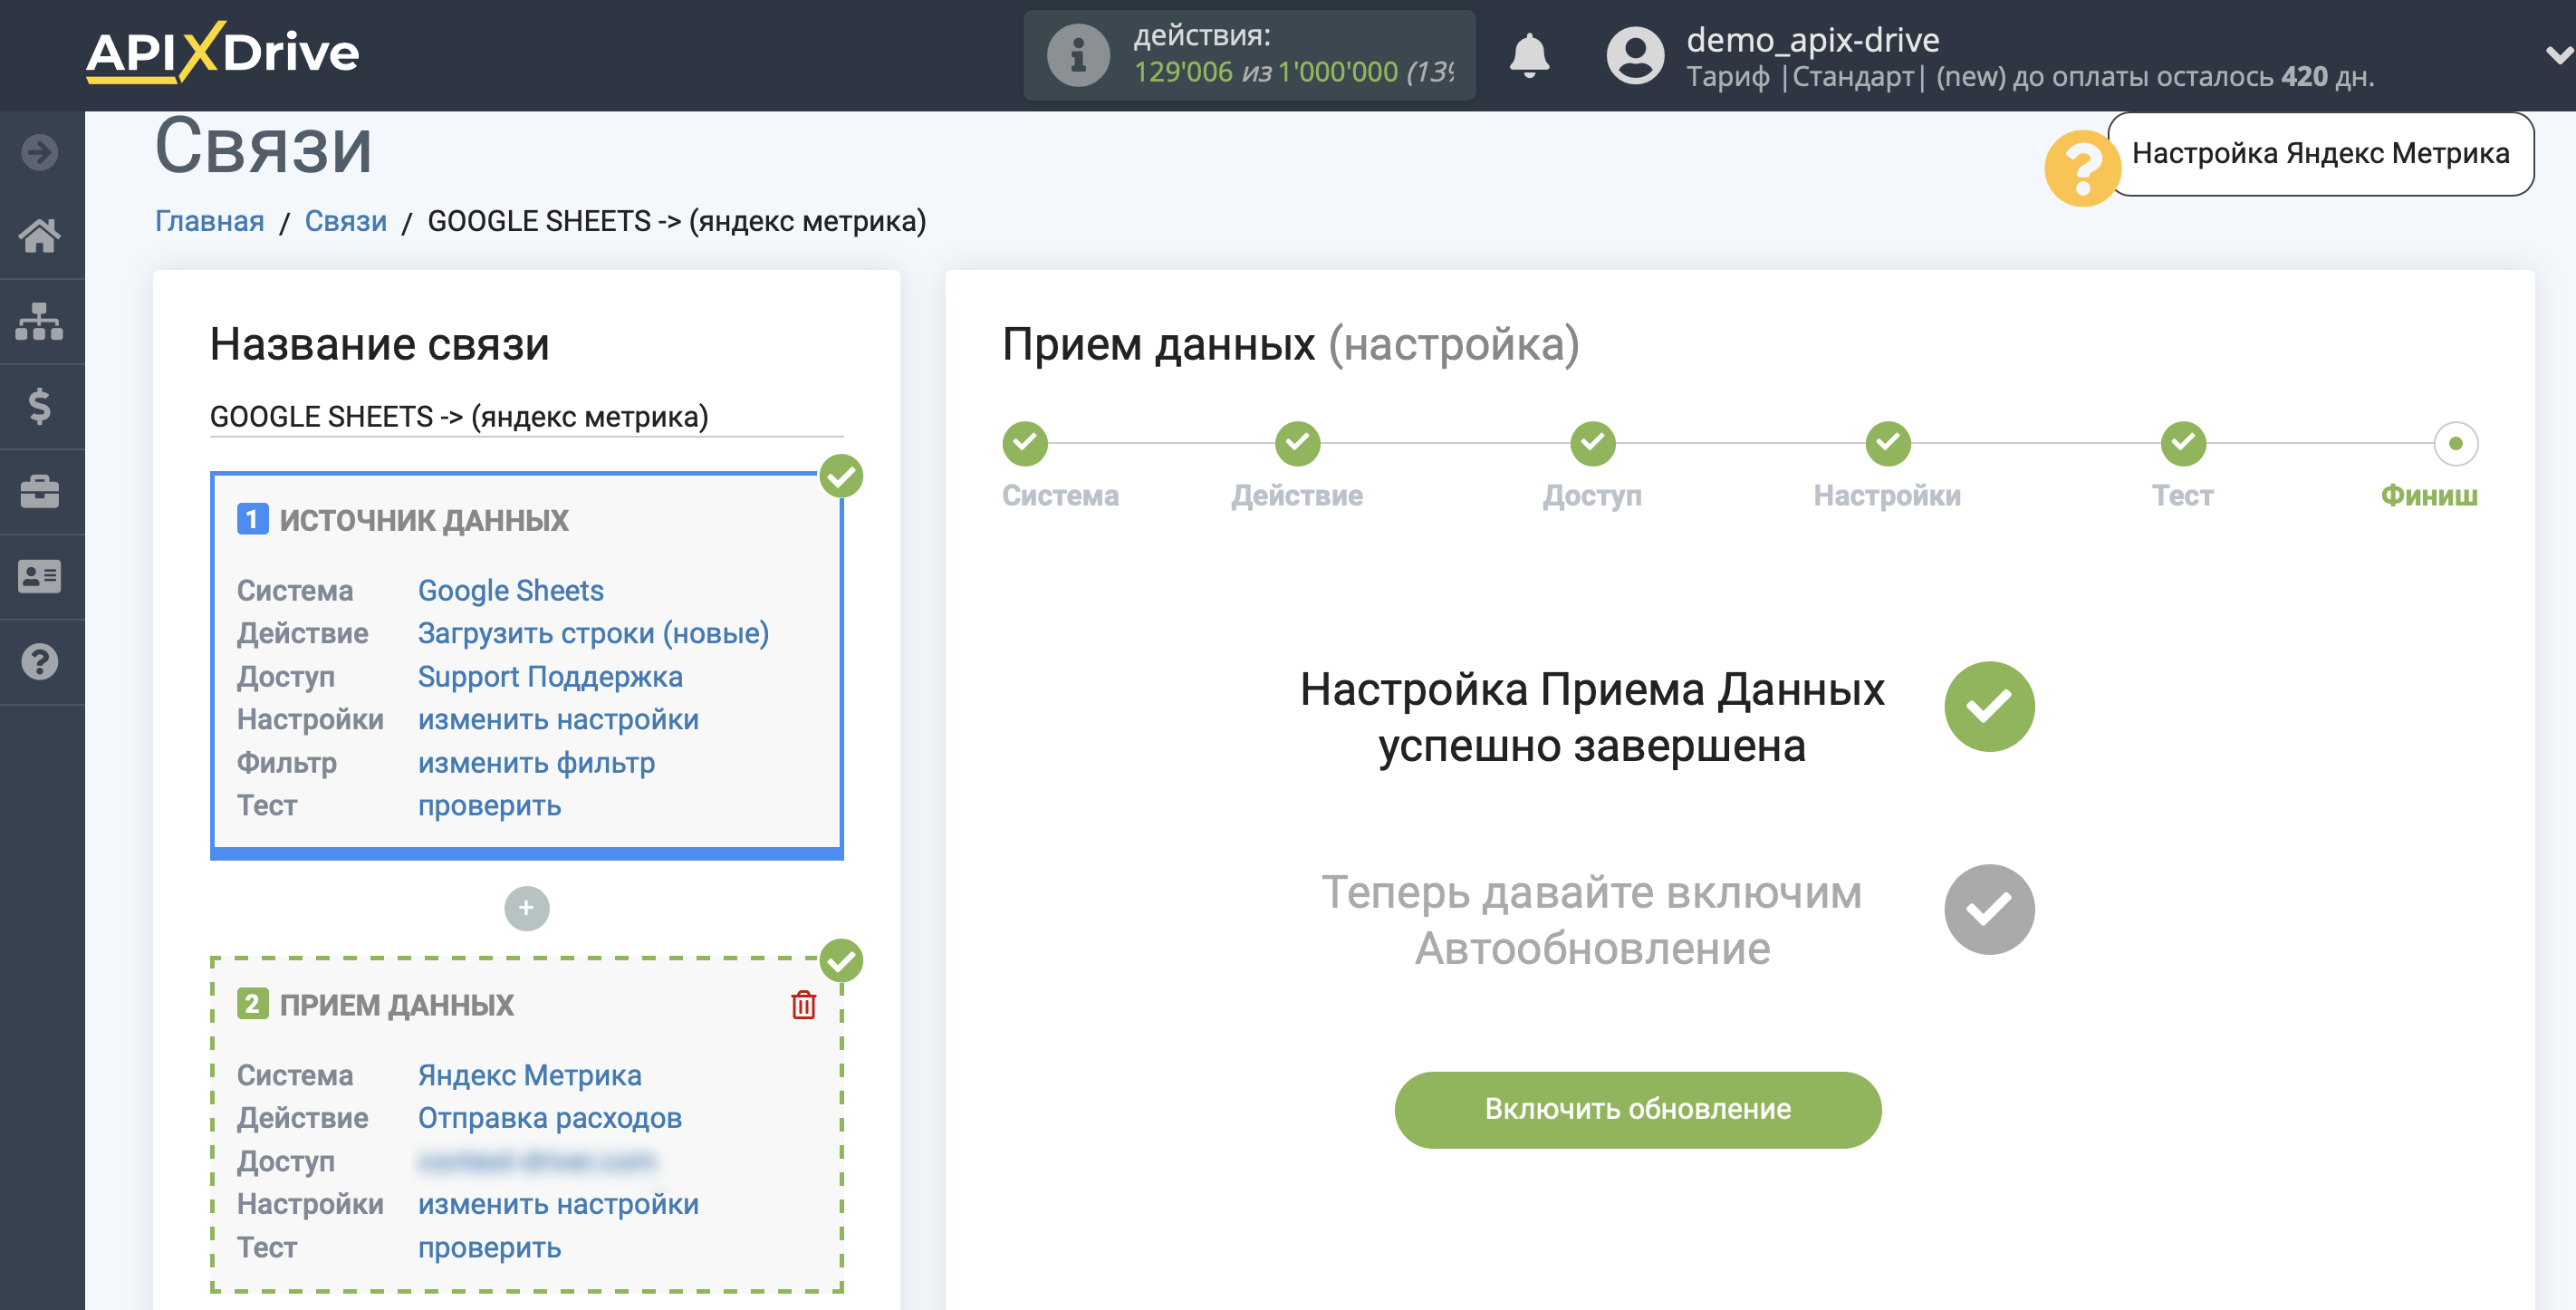 Настройка Яндекс Метрика в качестве Приема данных | Переход к включению автообновления